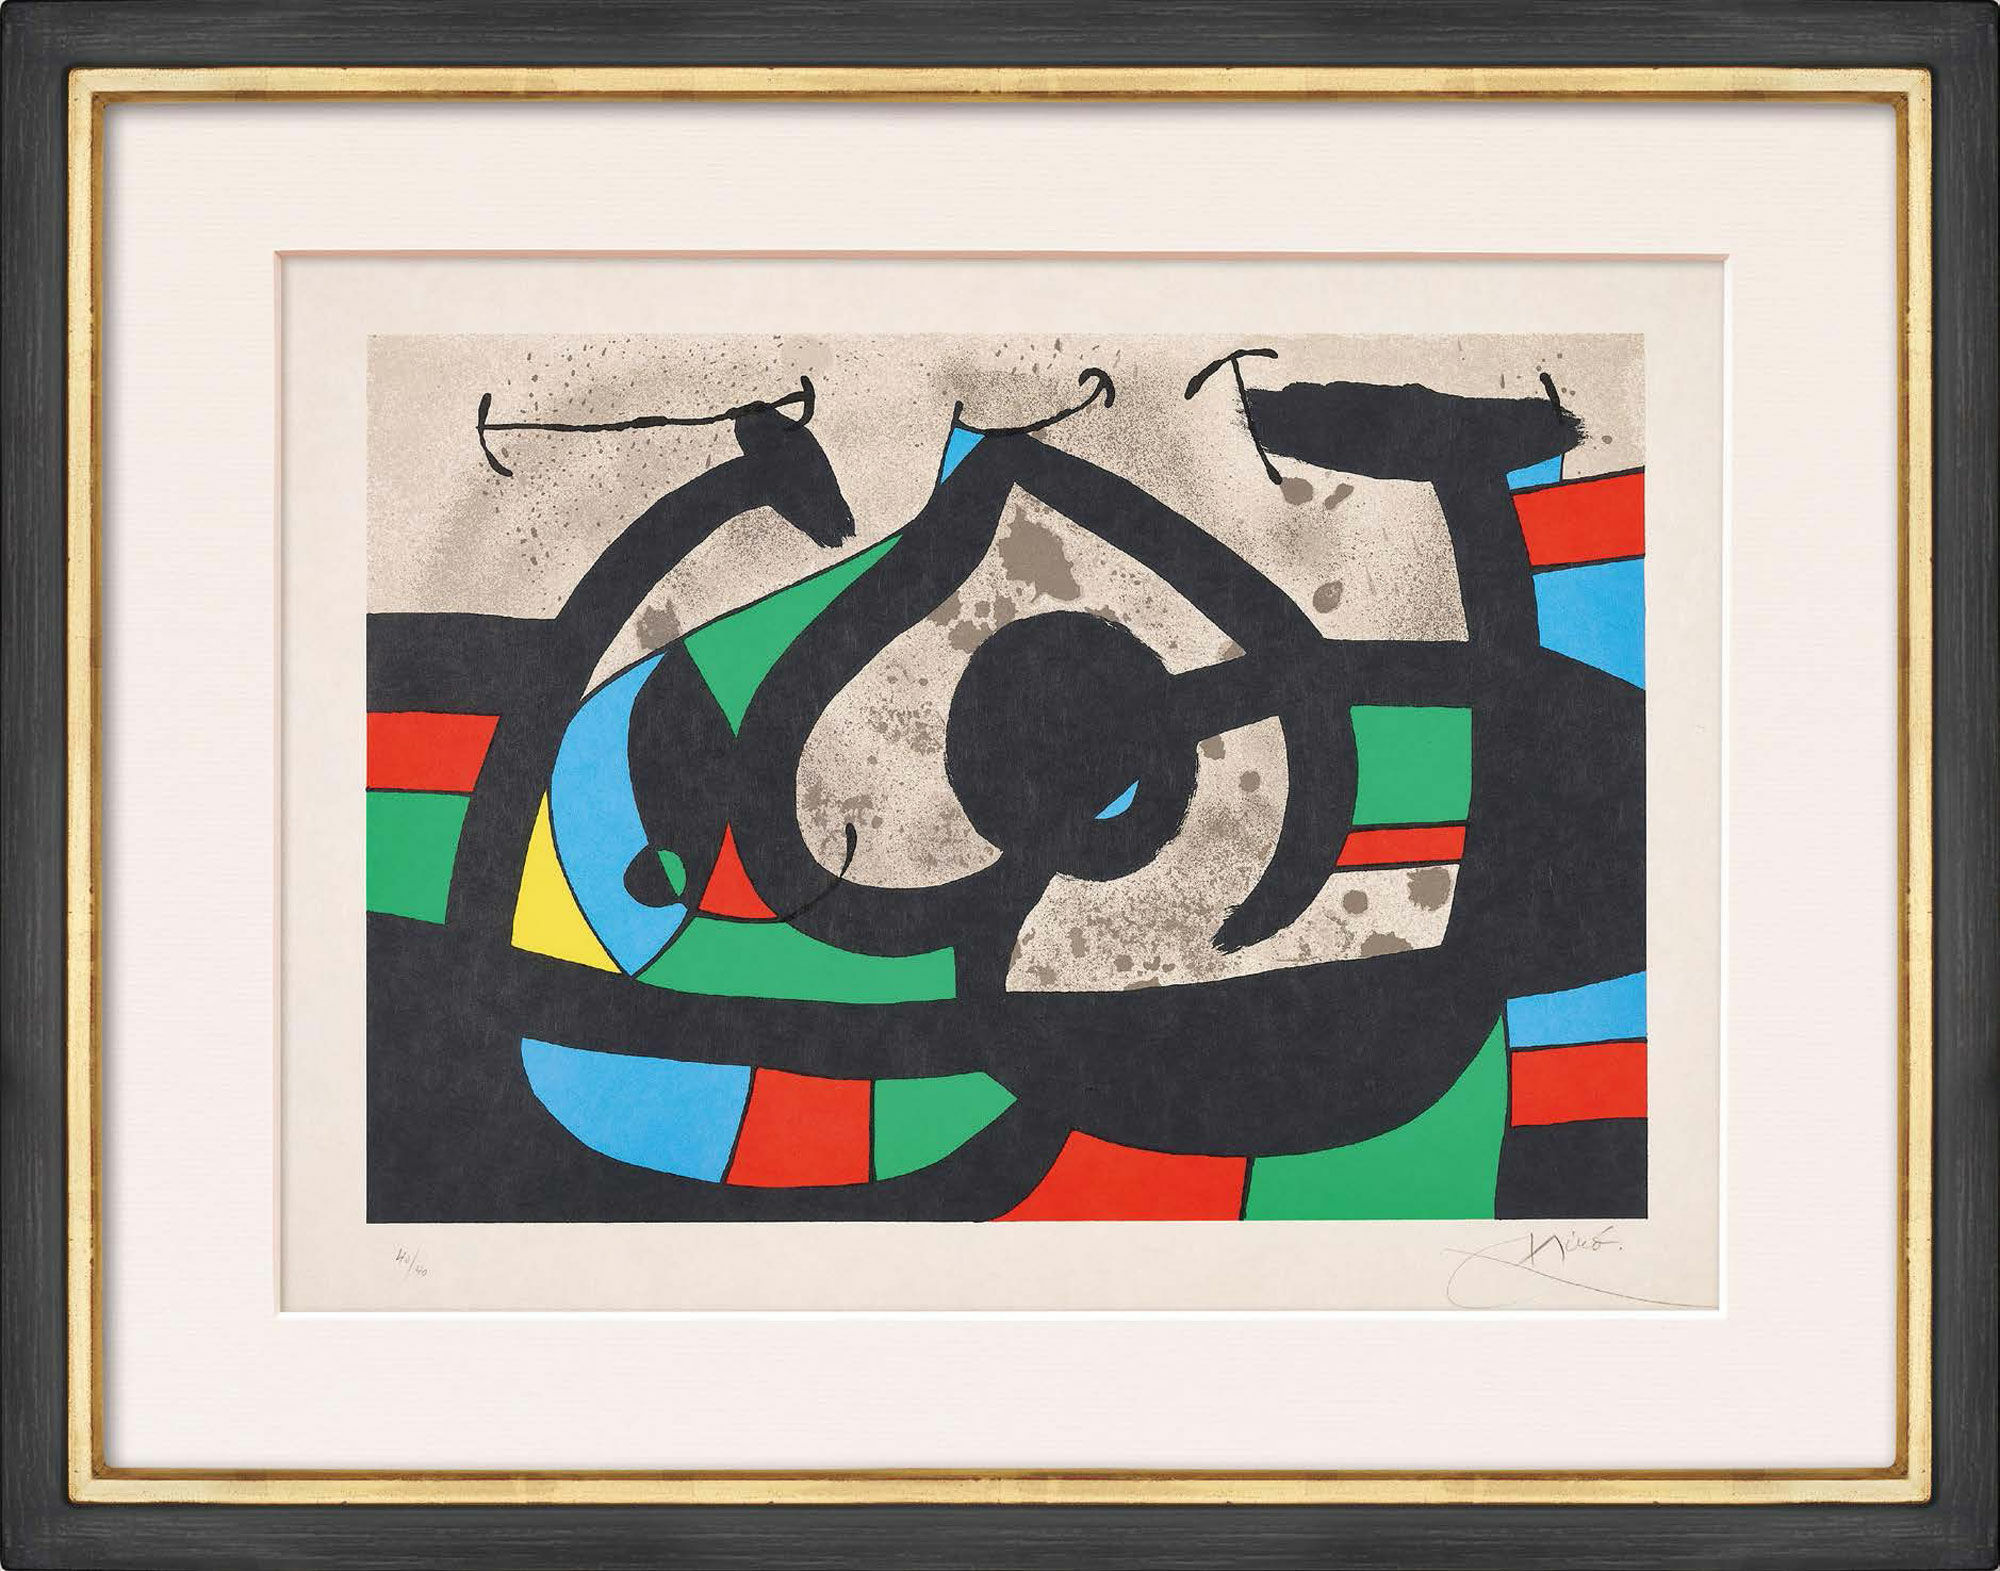 Billede "Le lézard aux plumes d'or" (1971) von Joan Miró